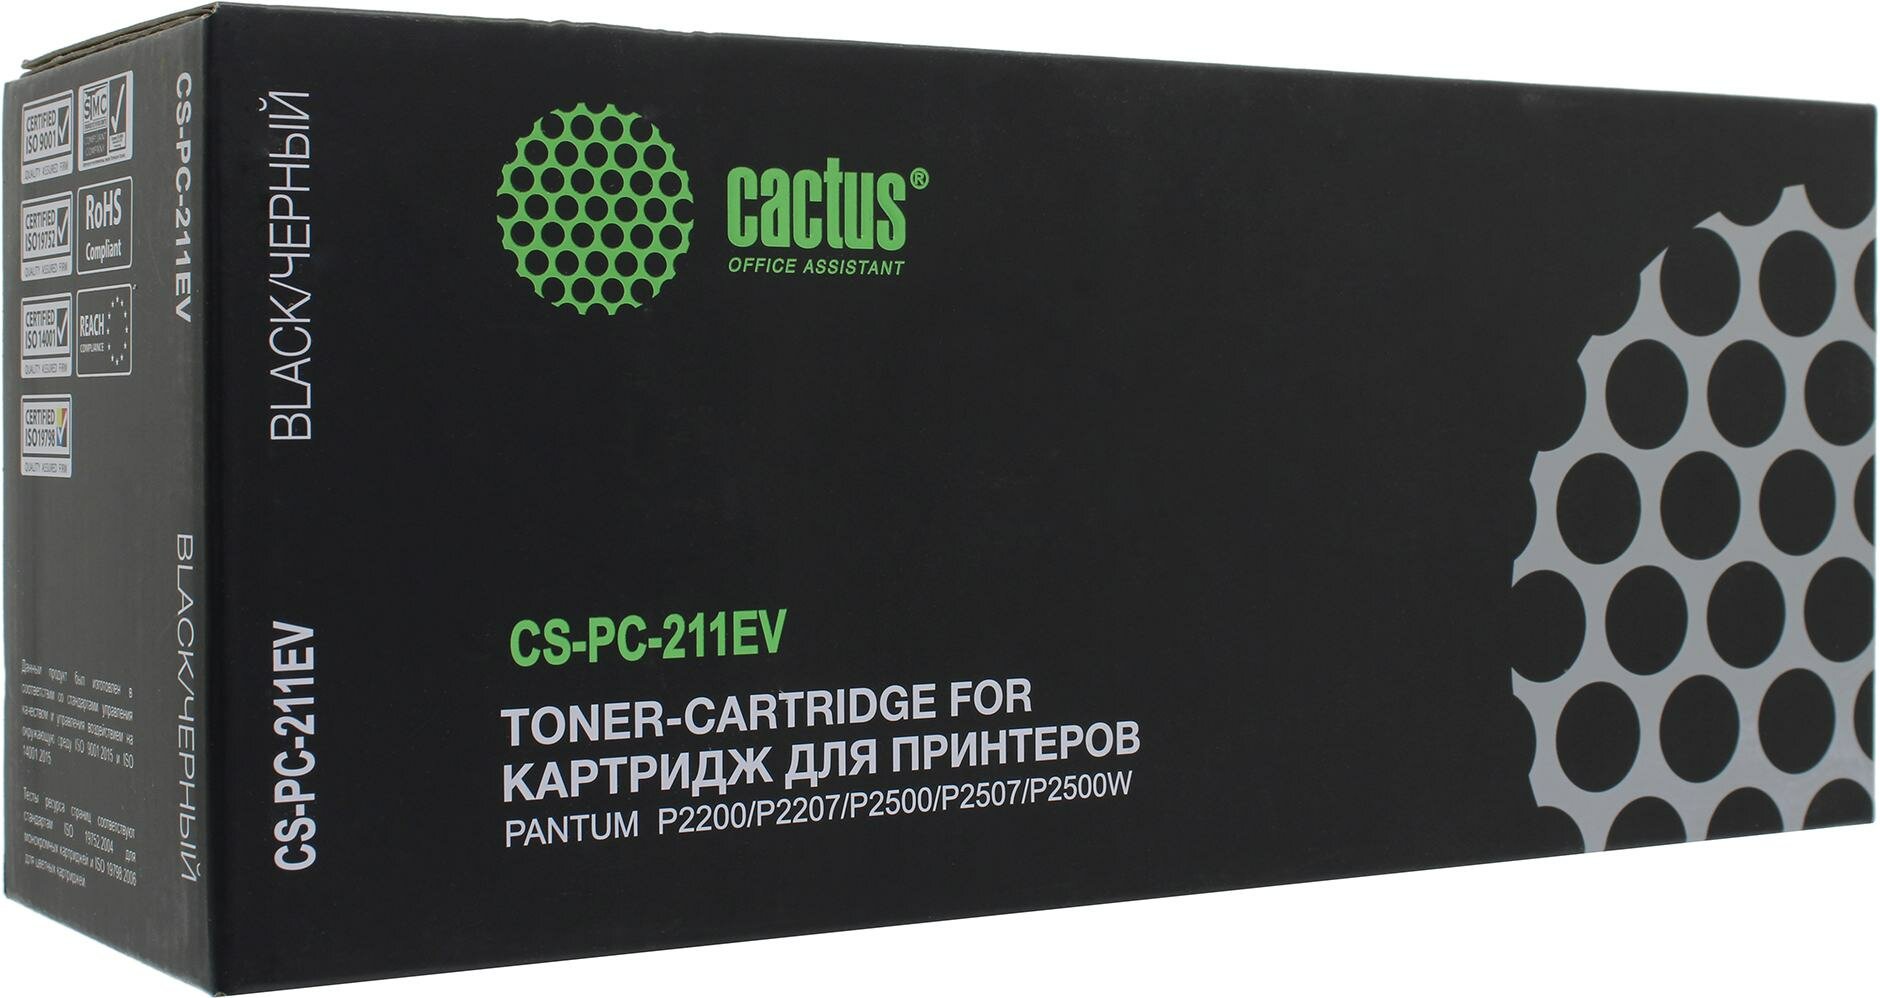 Картридж лазерный Cactus CS-PC-211EV